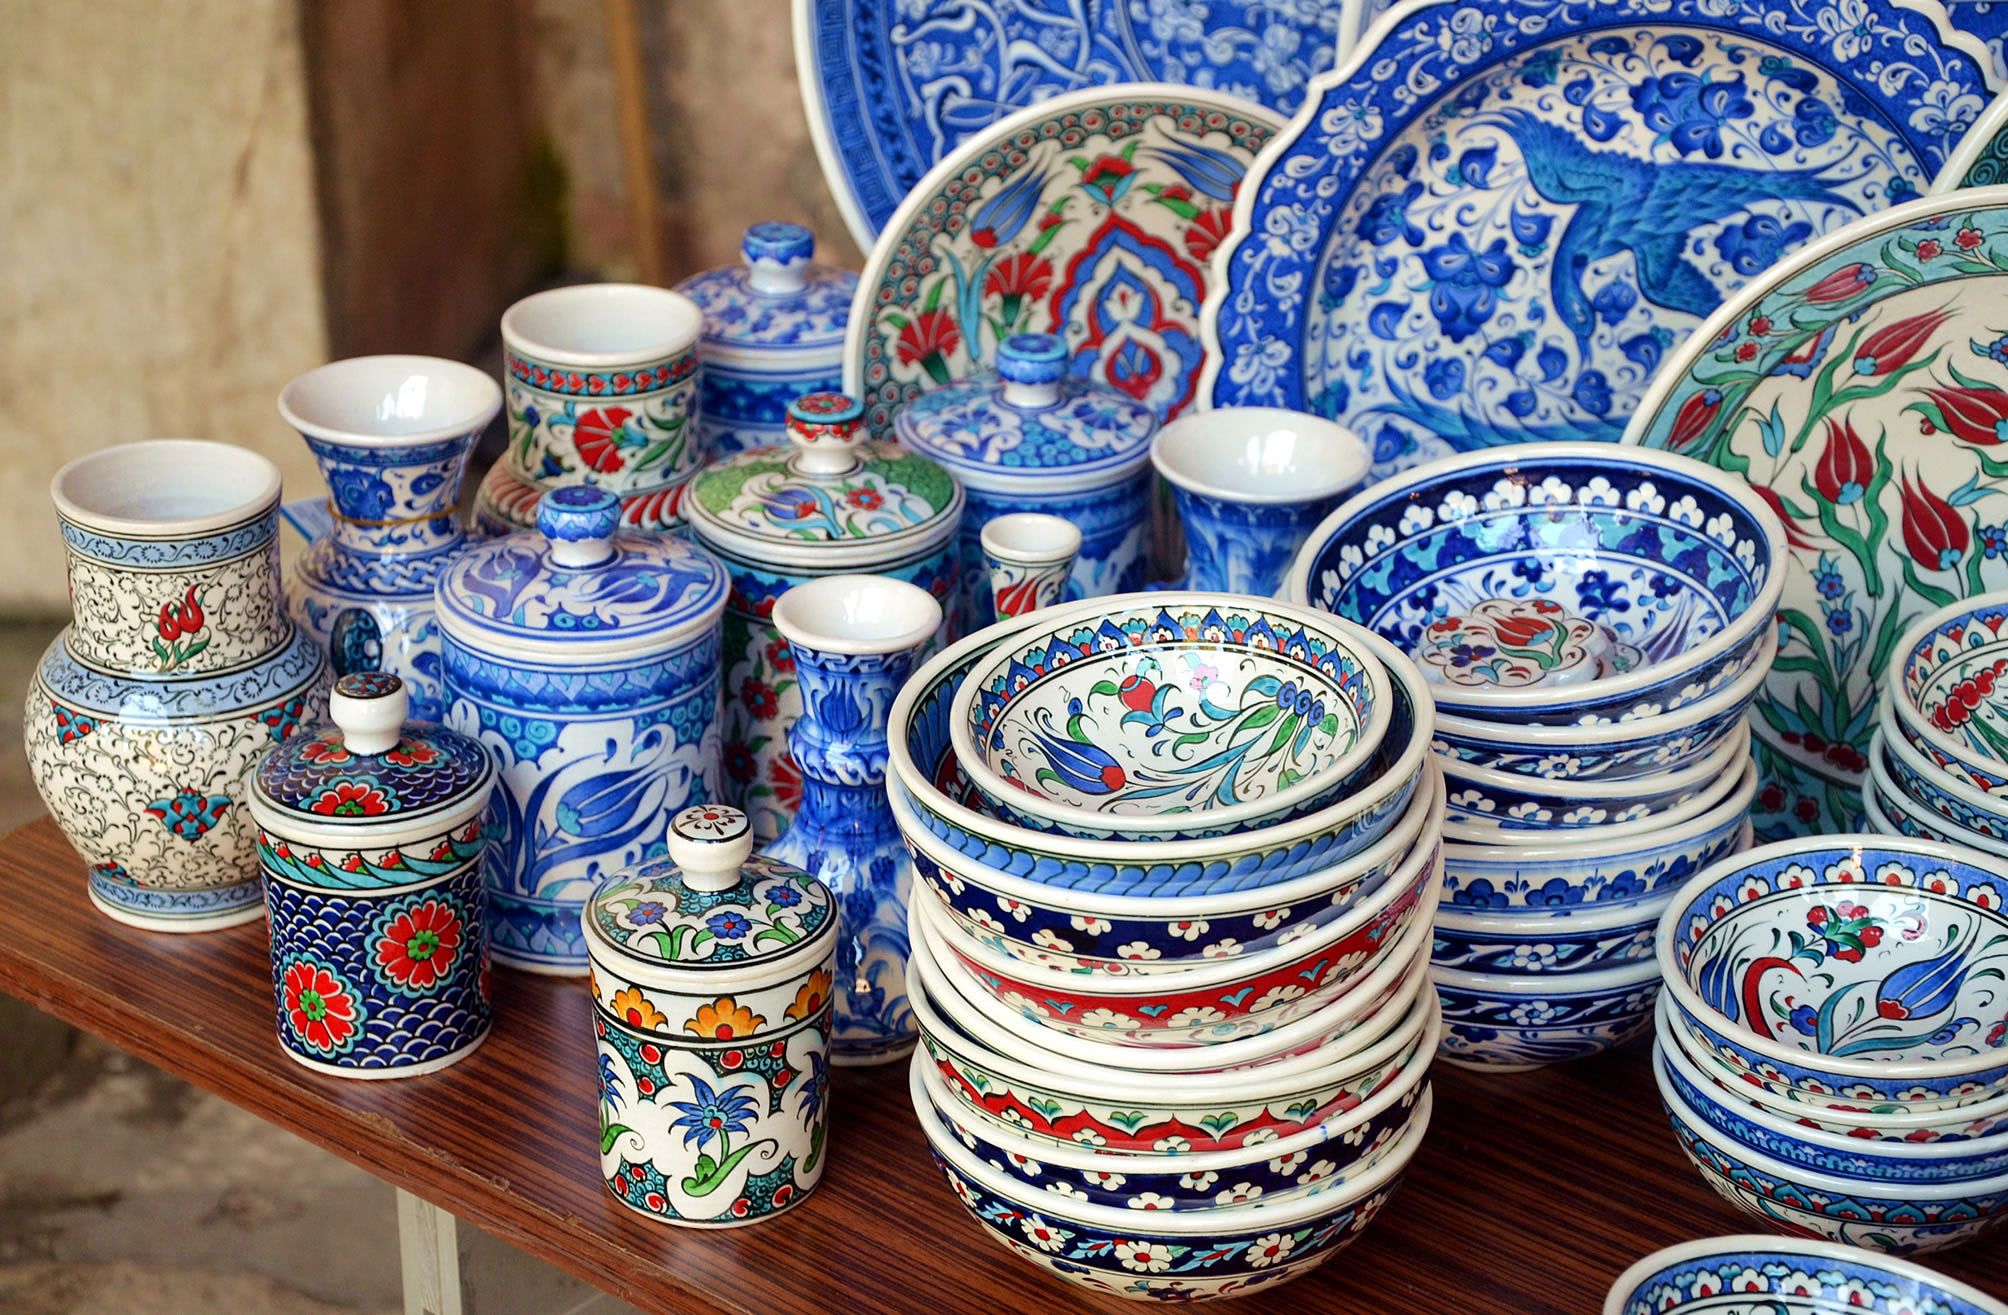 Турецкая керамическая посуда, лучшие сувениры из Турции turkish souvenirs from Turkey